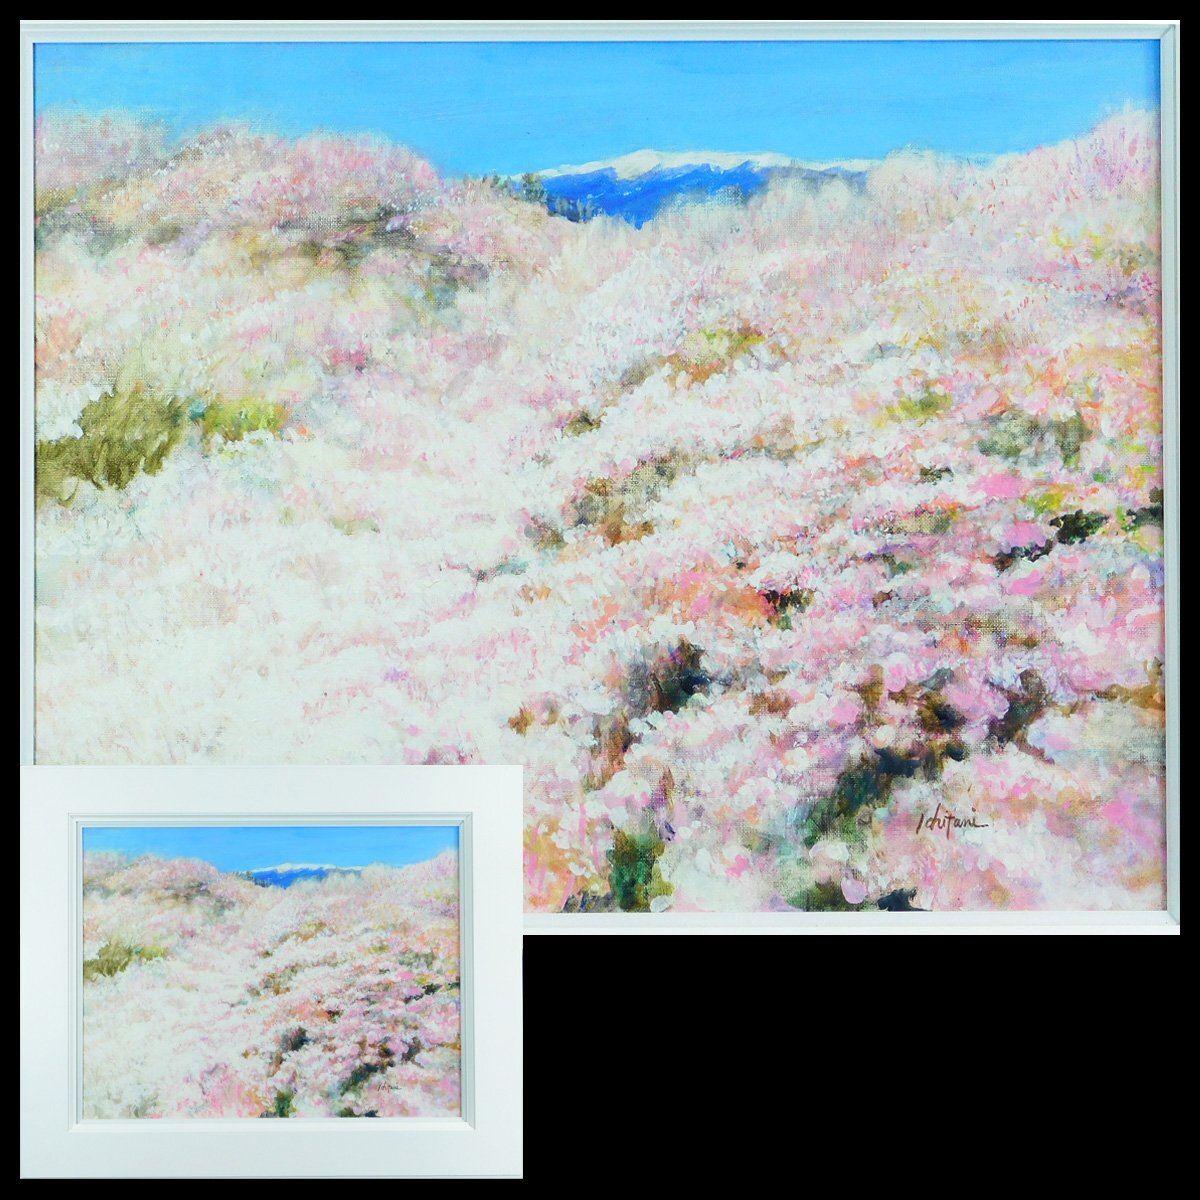 一谷贵吉 樱花 高远 画布油画 P10 装裱个展 活跃于横滨的艺术家 ka240323, 绘画, 油画, 自然, 山水画